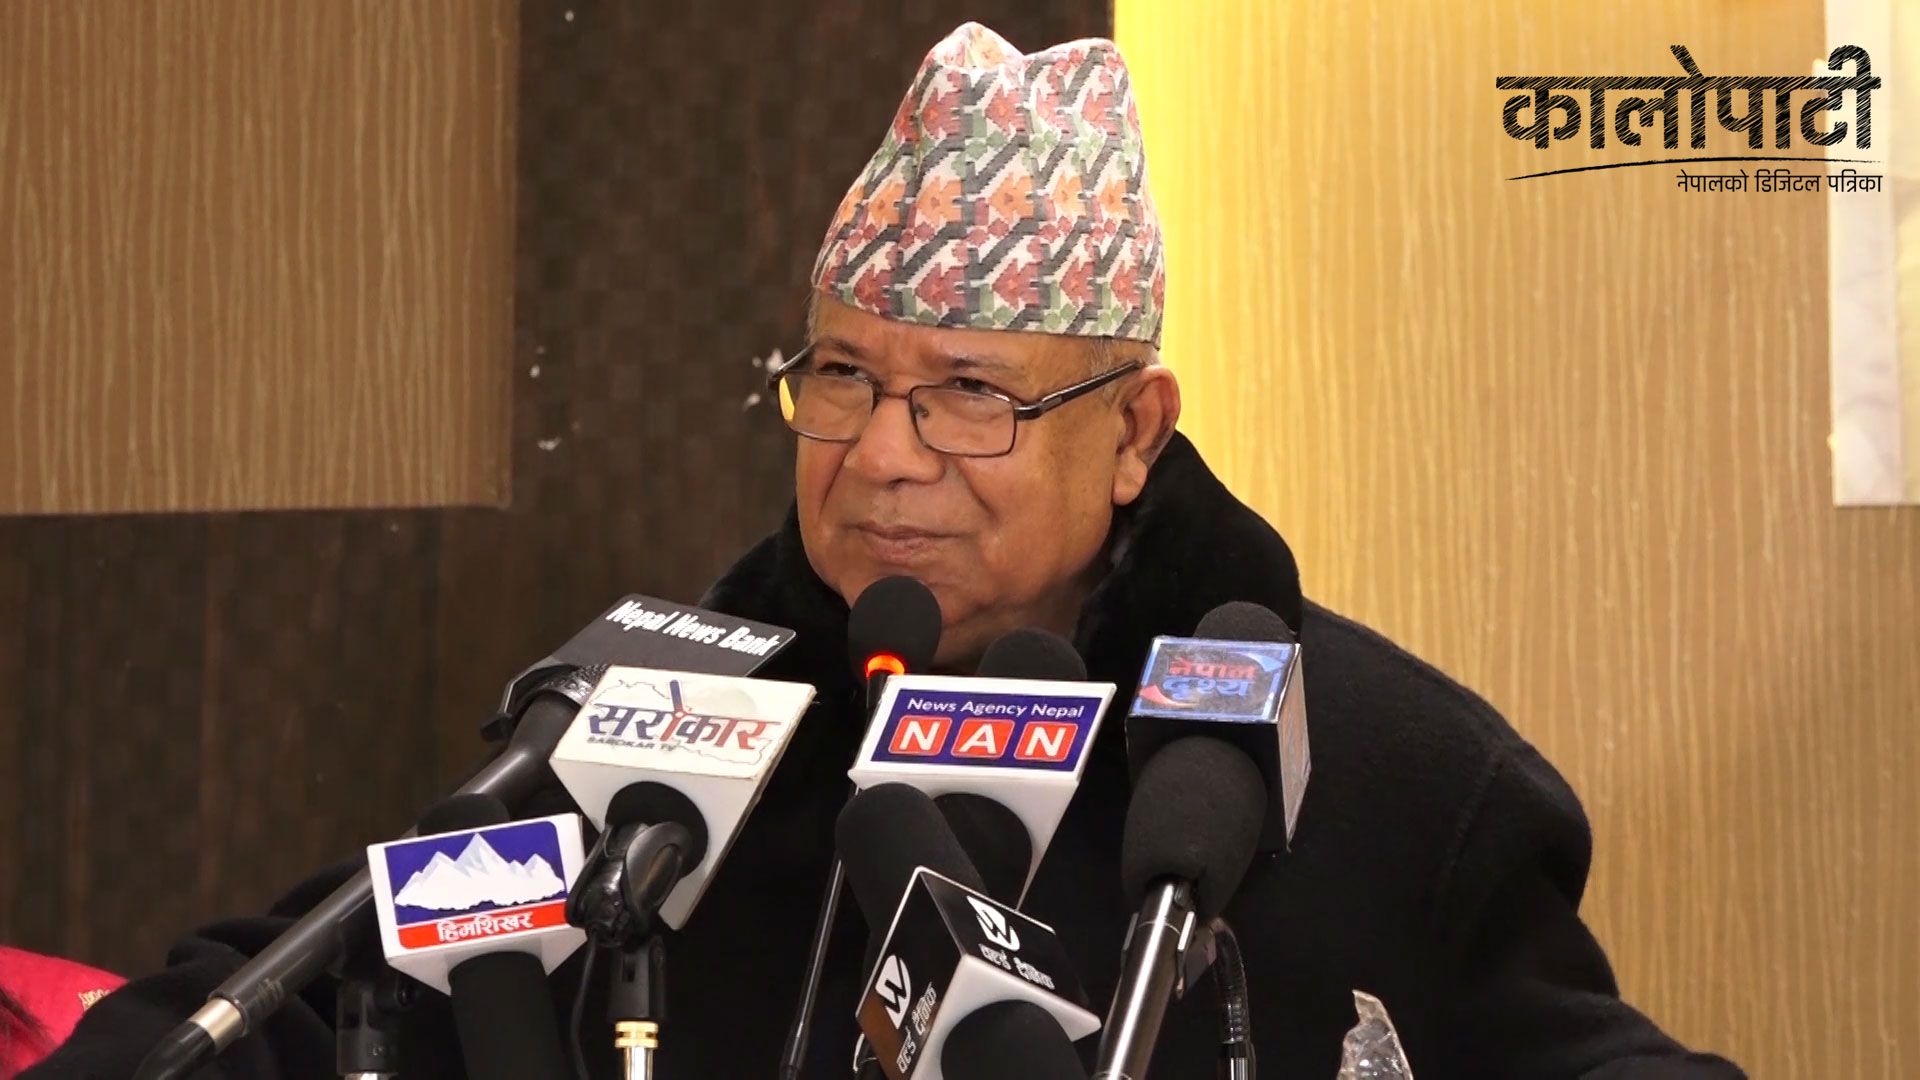 ‘अध्यक्ष ओलीले राष्ट्रियसभा निर्वाचनमा हार स्विकार गरे’ : अध्यक्ष नेपाल , हेर्नुहोस् भिडियो